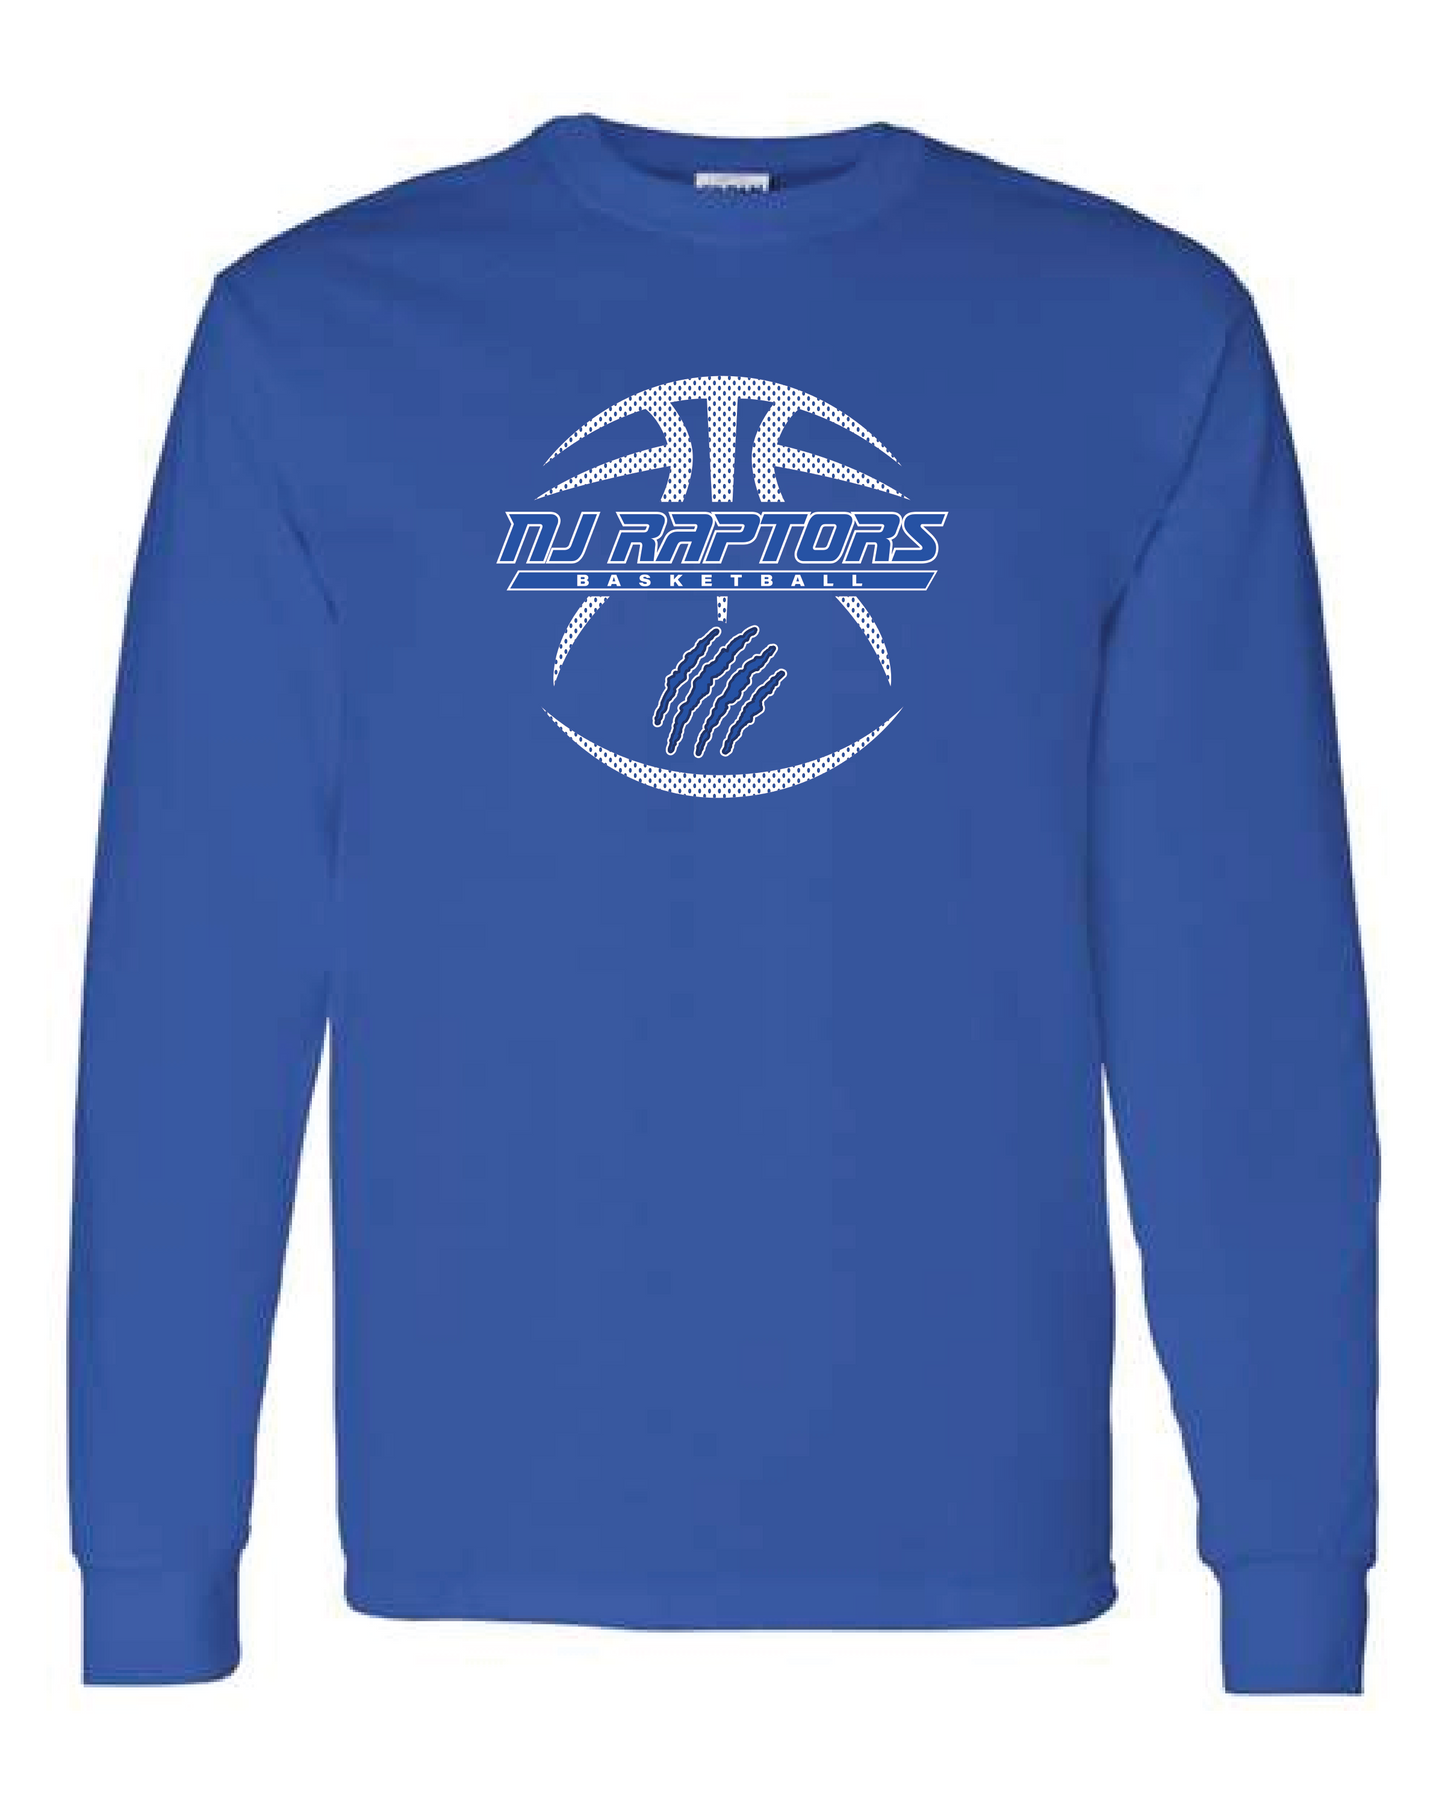 NJ Raptors Basketball Logo L/S Tshirt Royal